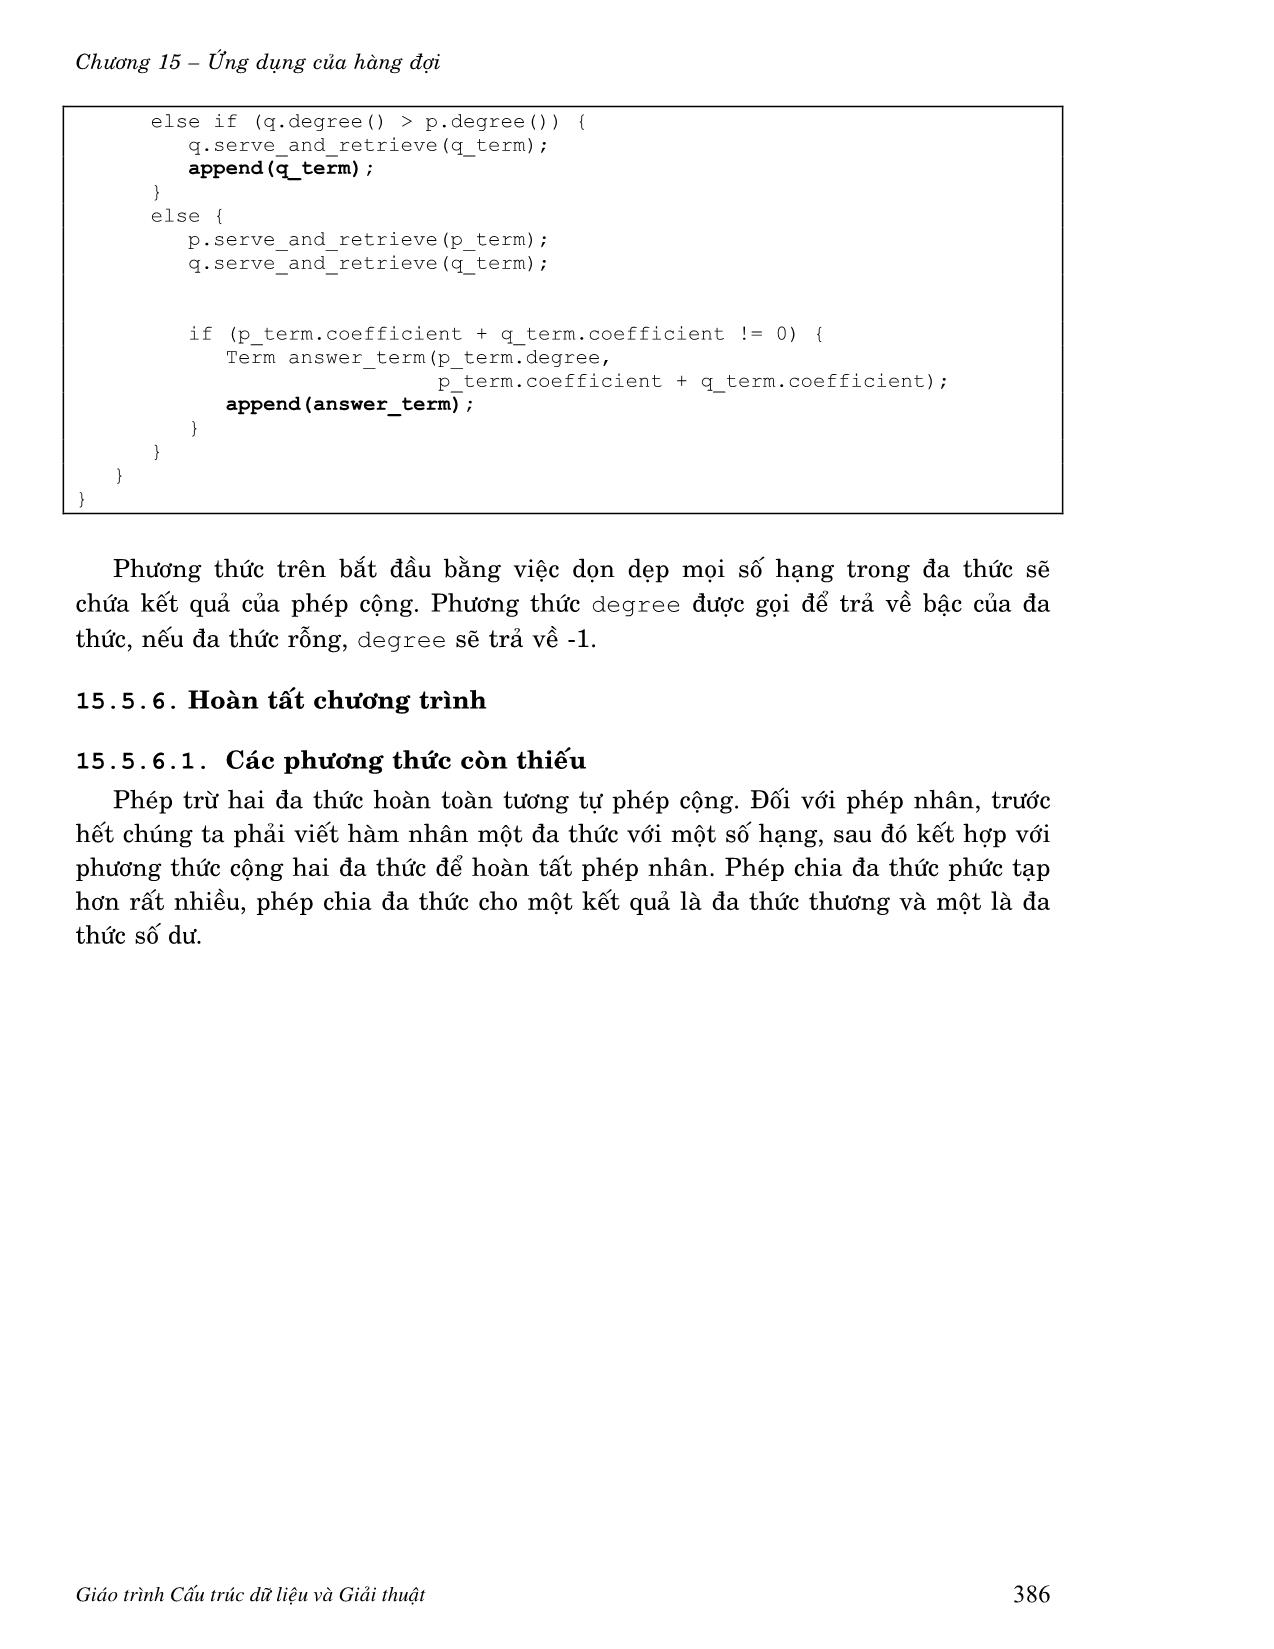 Giáo trình Cấu trúc dữ liệu - Chương 15: Ứng dụng của hàng đợi trang 10